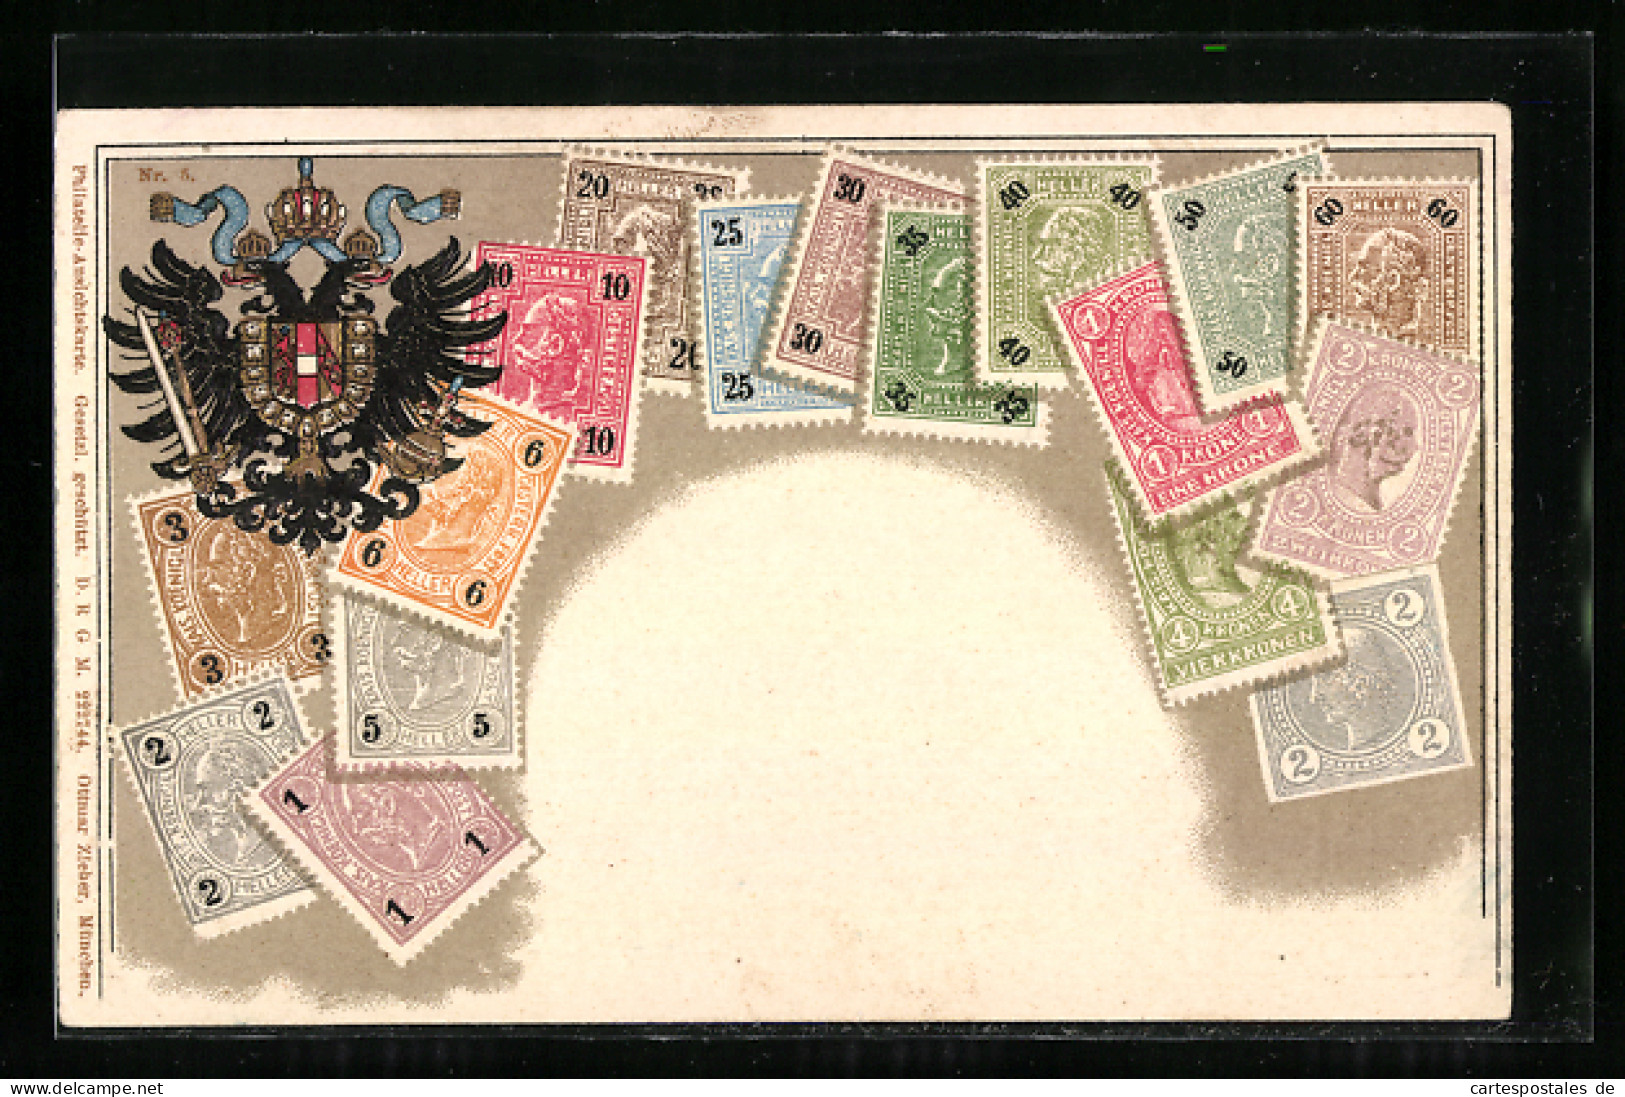 Präge-AK Österreich, Briefmarken Und Doppeladler  - Timbres (représentations)